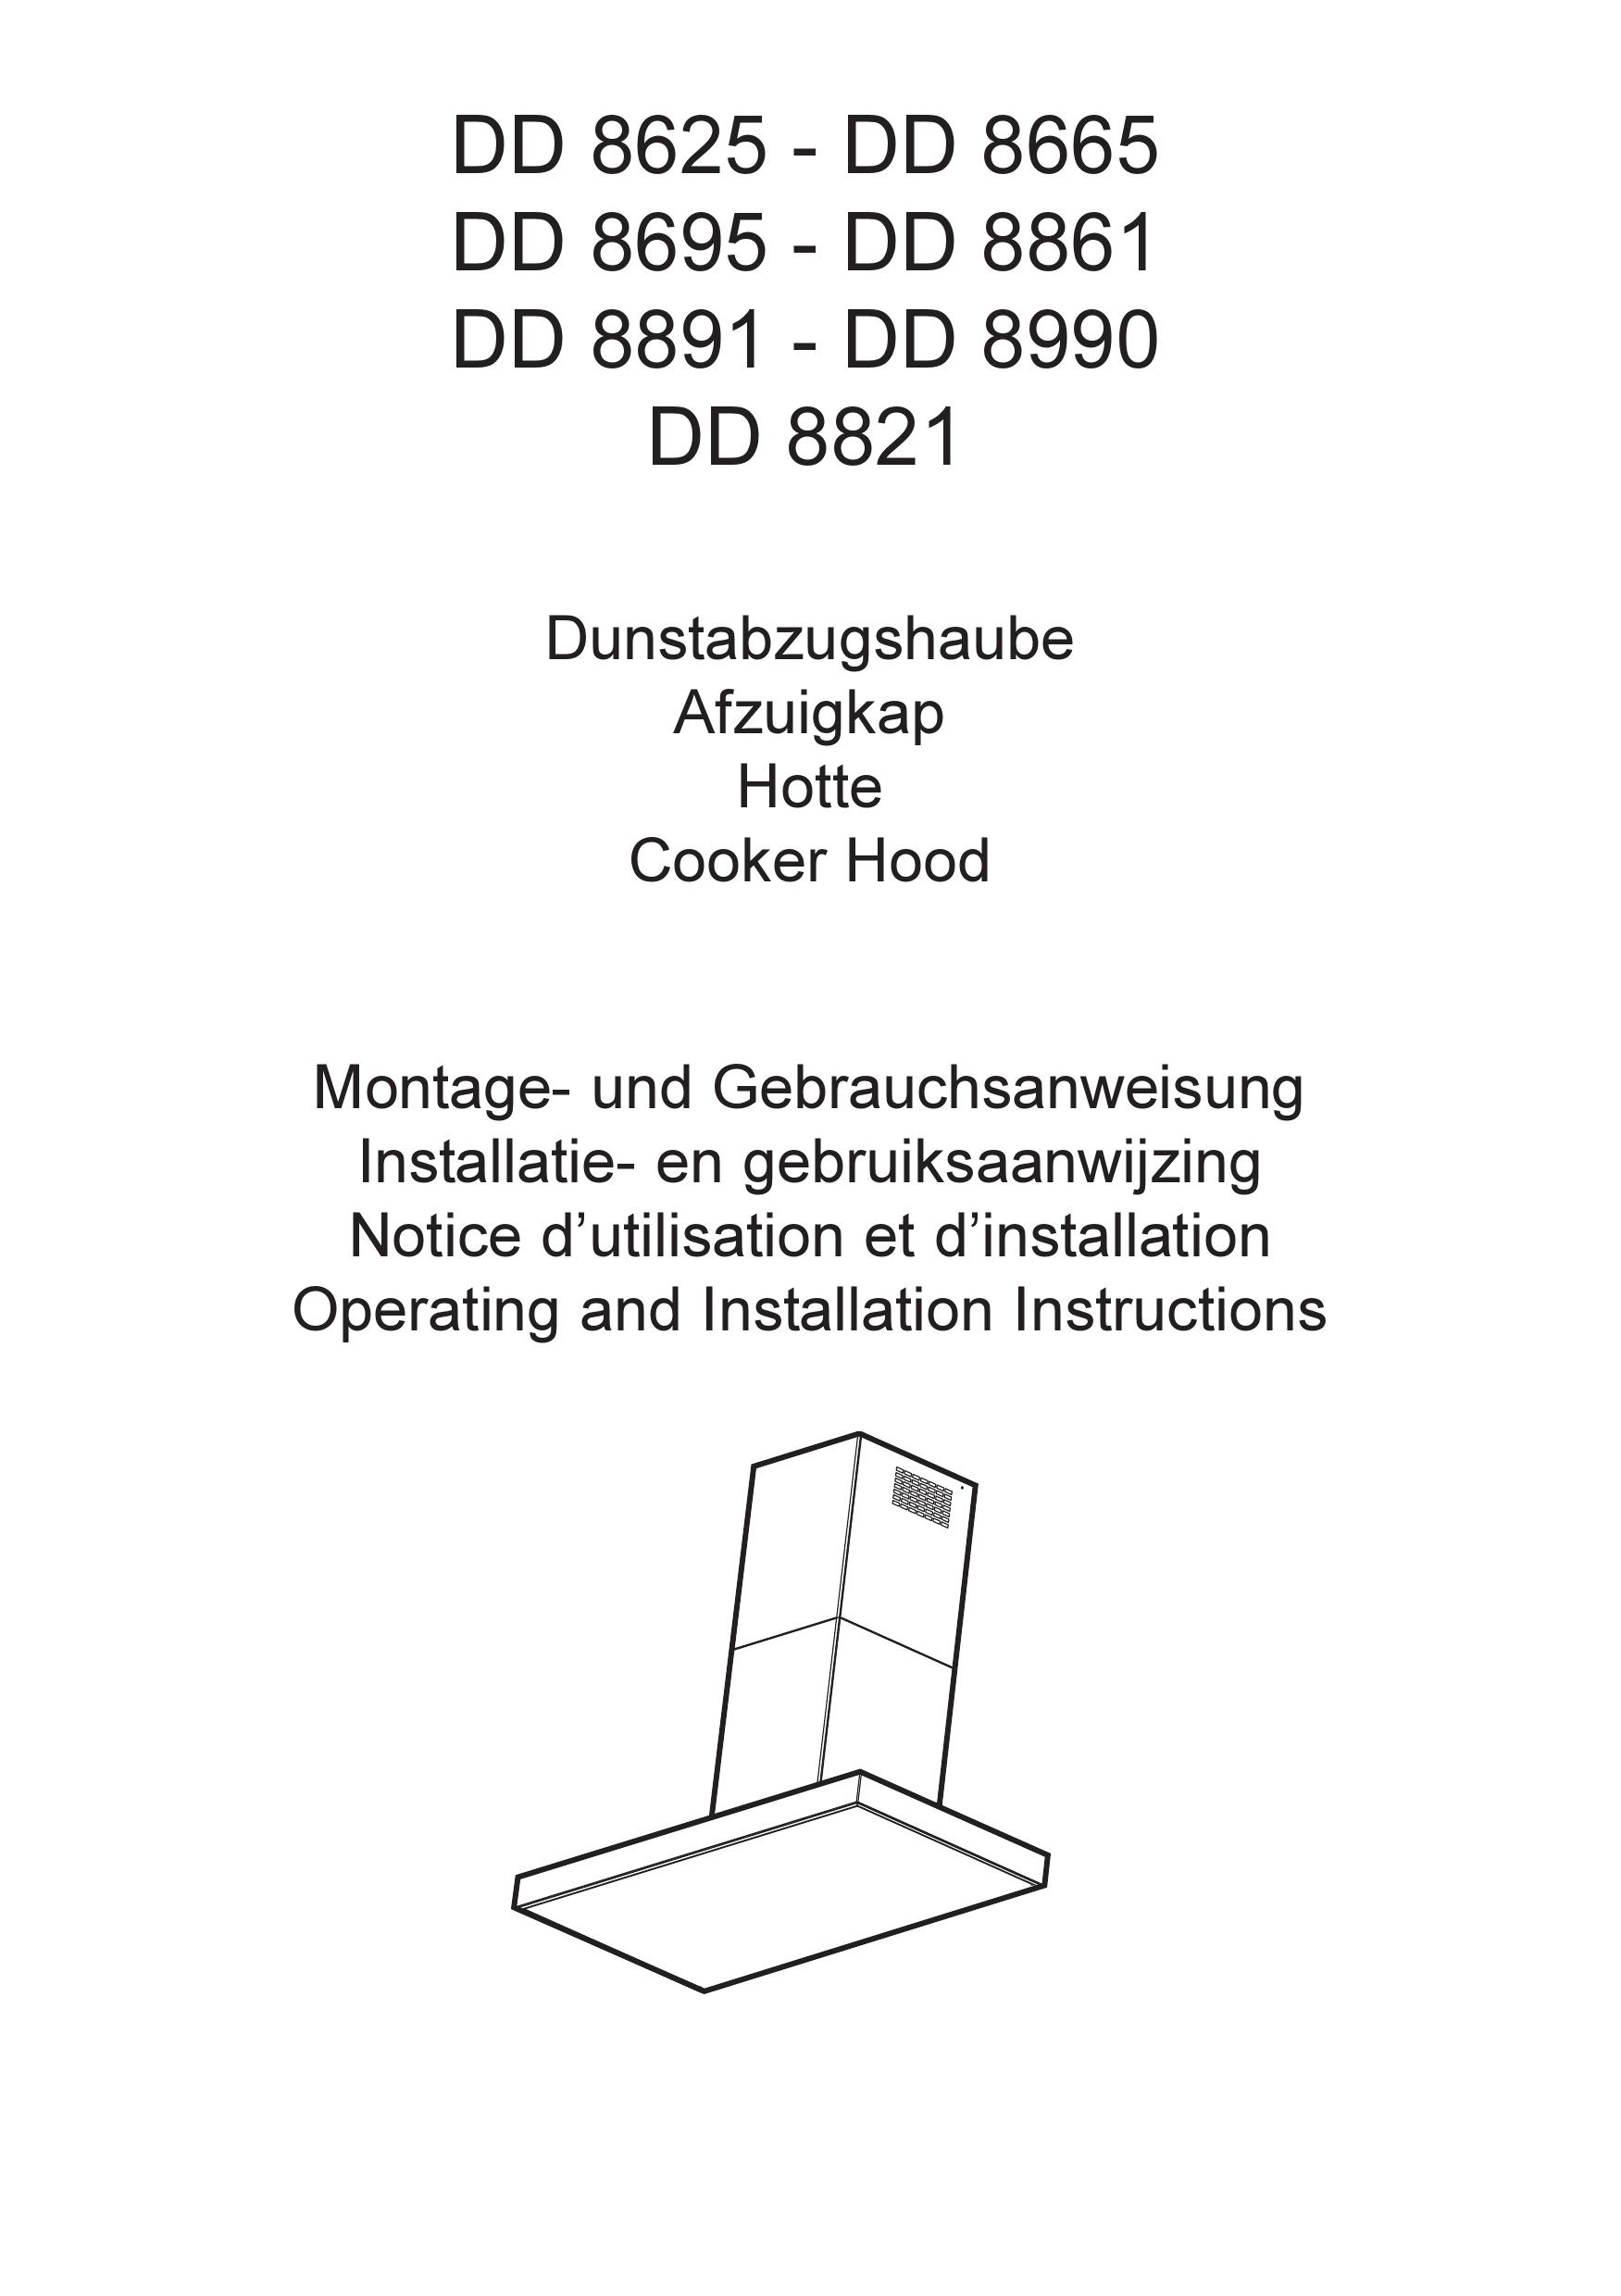 AEG DD 8695 Ventilation Hood User Manual